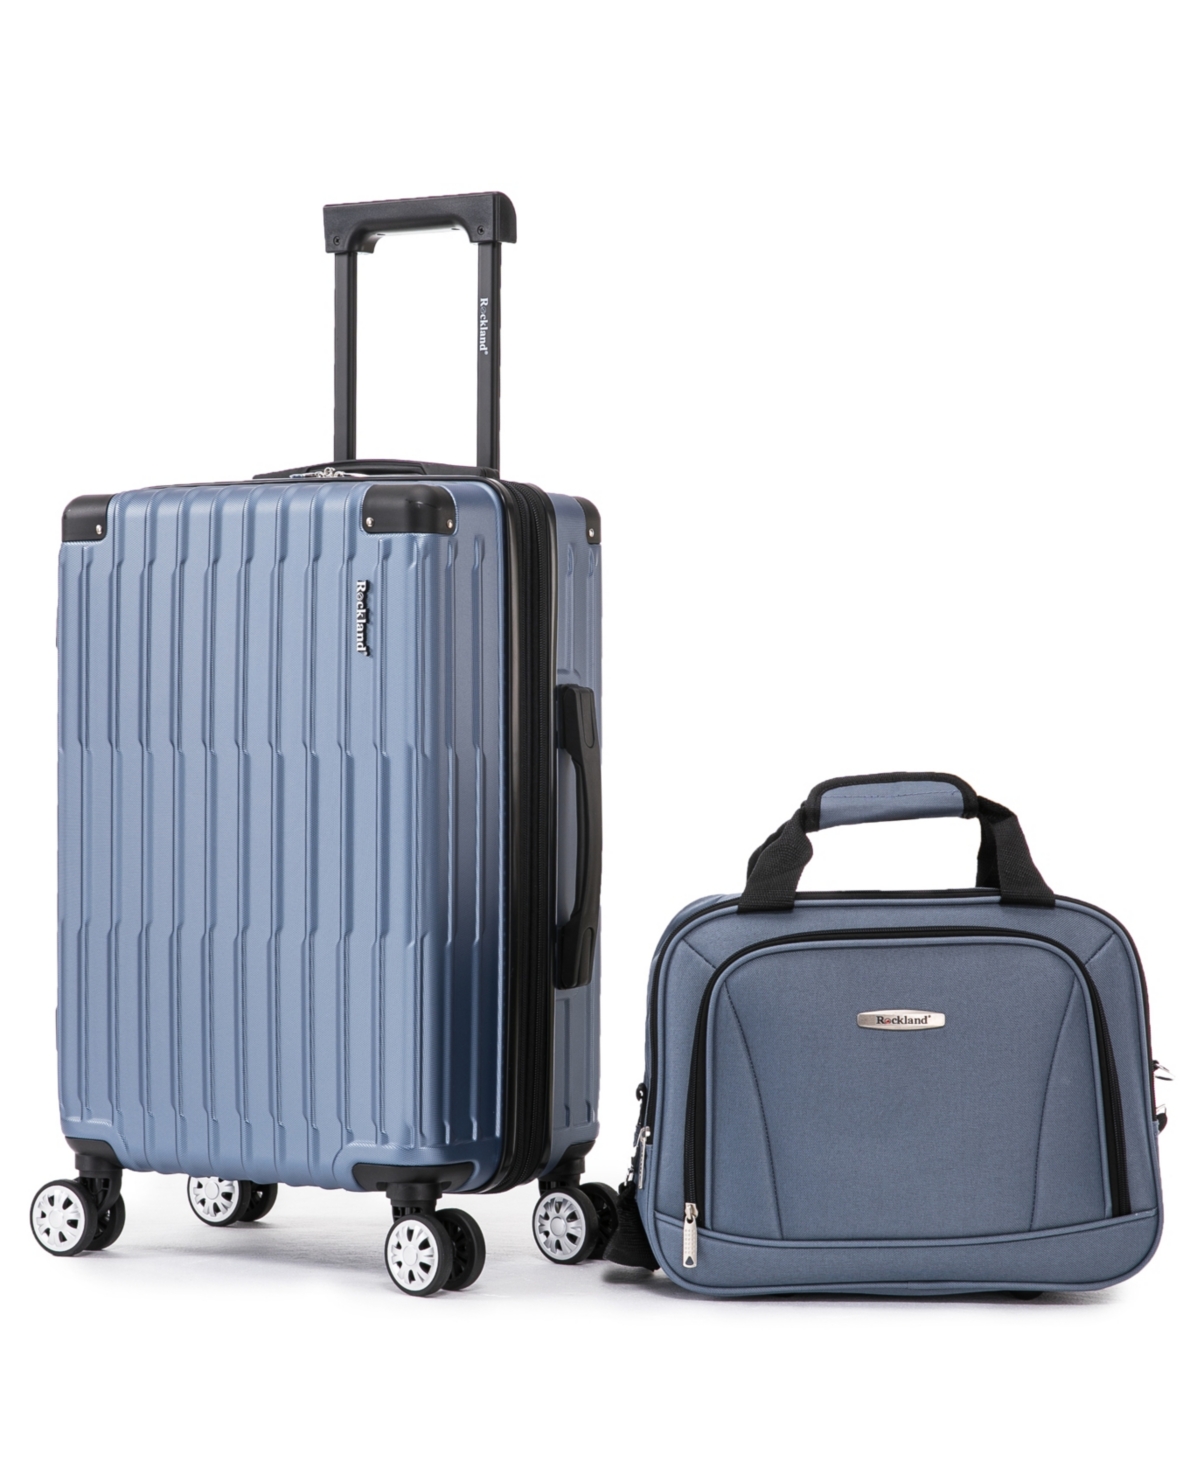 Rockland Napa Valley Luggage Set, 2 Piece In Blue